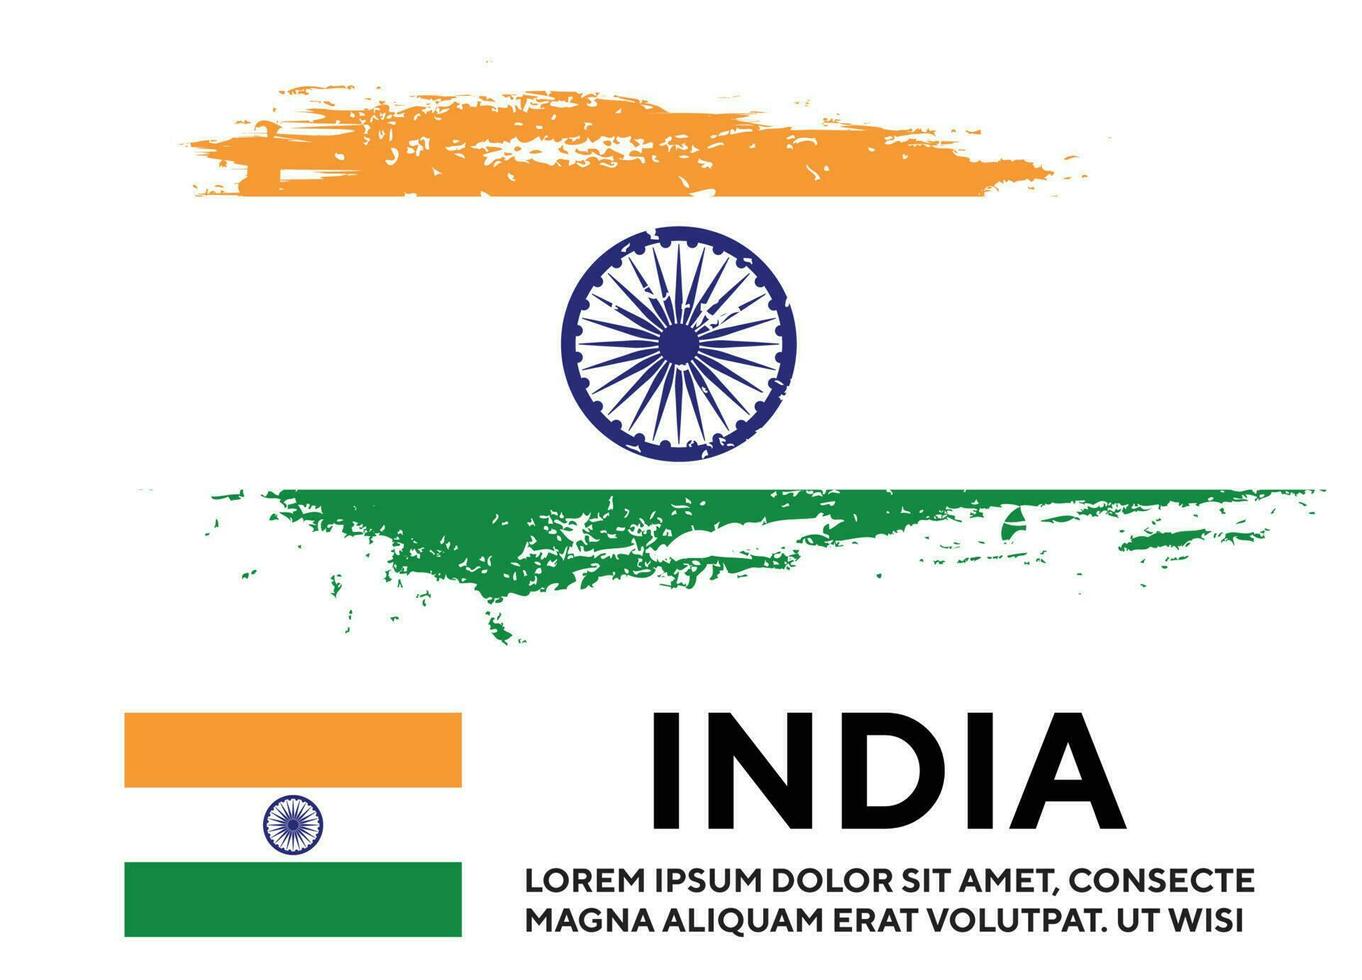 vetor de design de bandeira colorida indiana de textura grunge